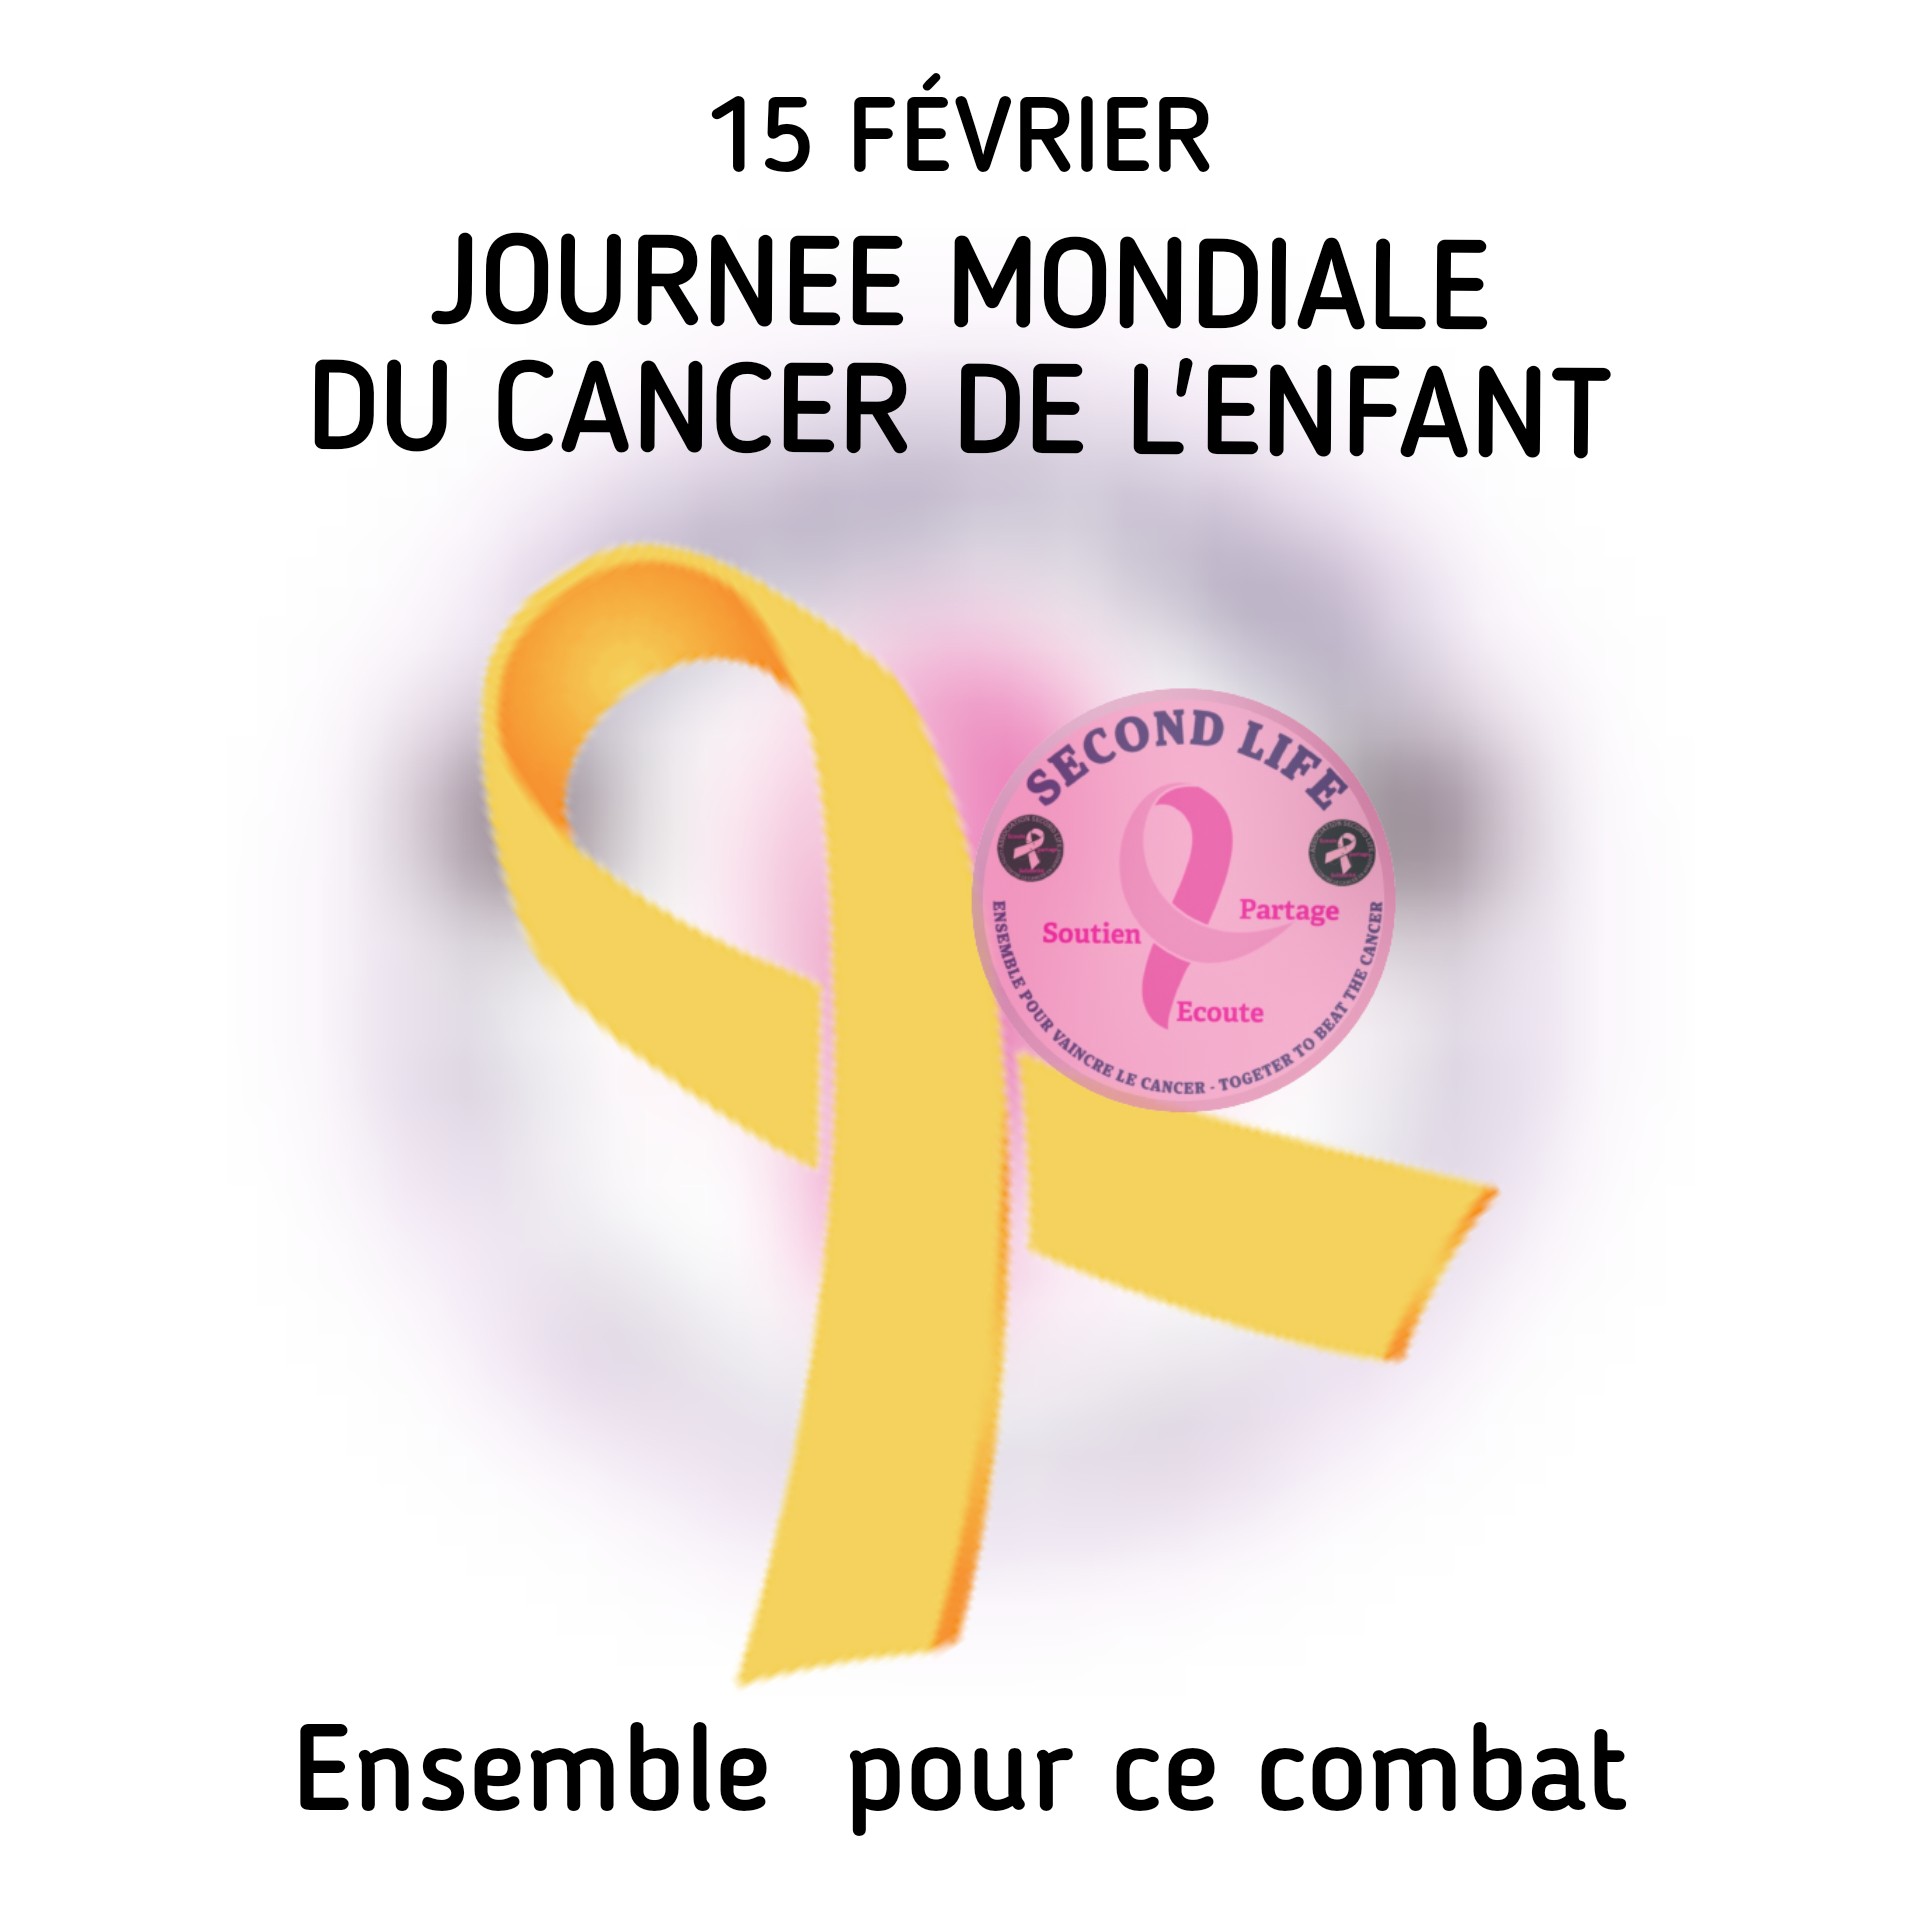 15 février journée mondiale du cancer des enfants